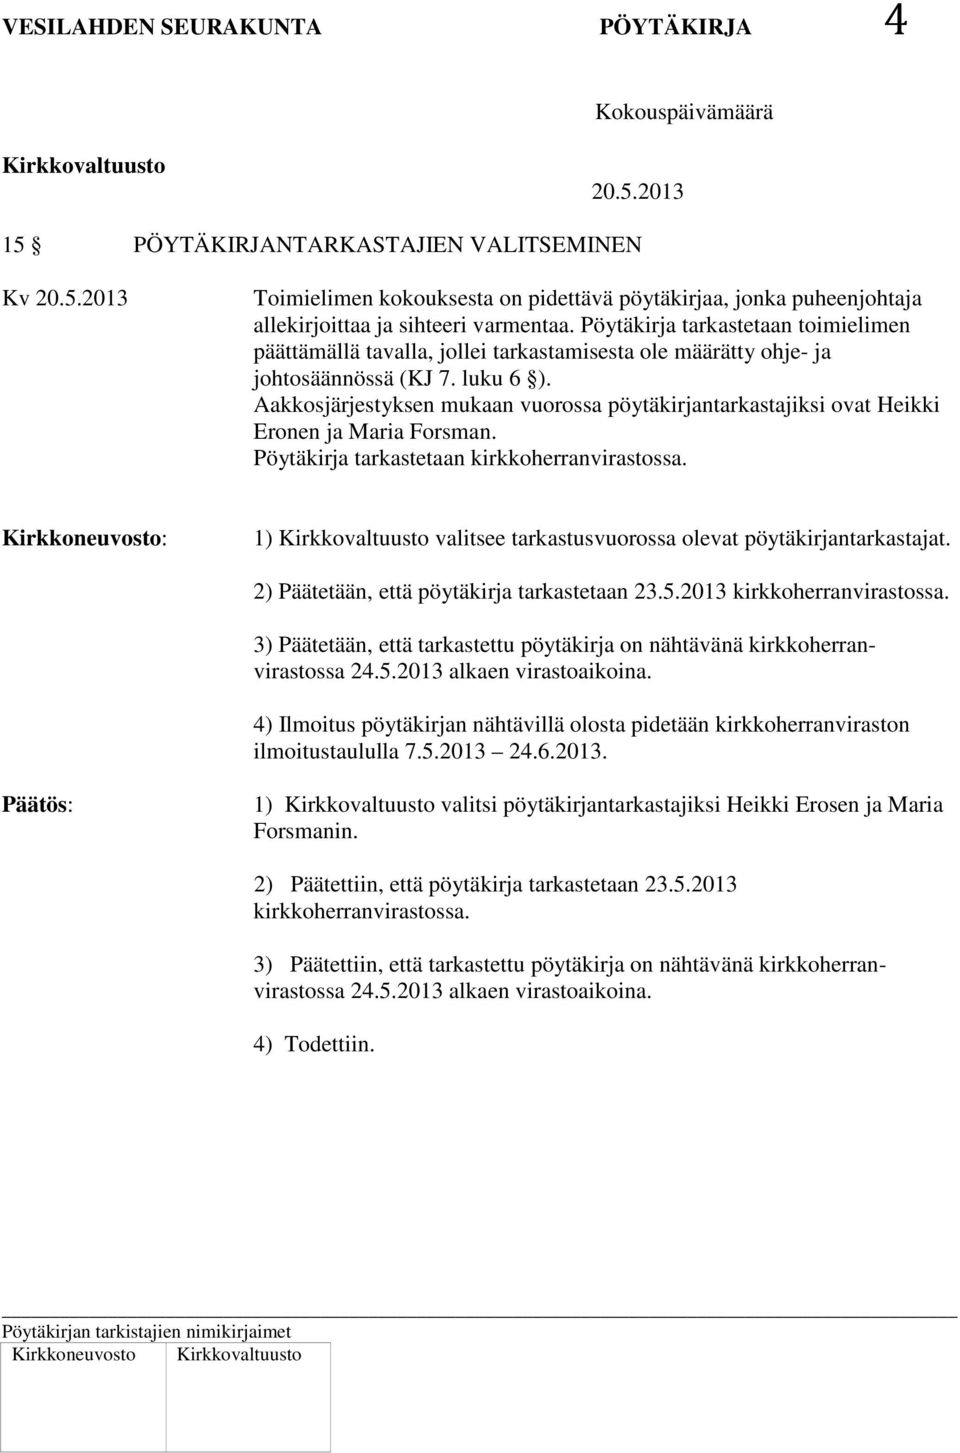 Aakkosjärjestyksen mukaan vuorossa pöytäkirjantarkastajiksi ovat Heikki Eronen ja Maria Forsman. Pöytäkirja tarkastetaan kirkkoherranvirastossa.